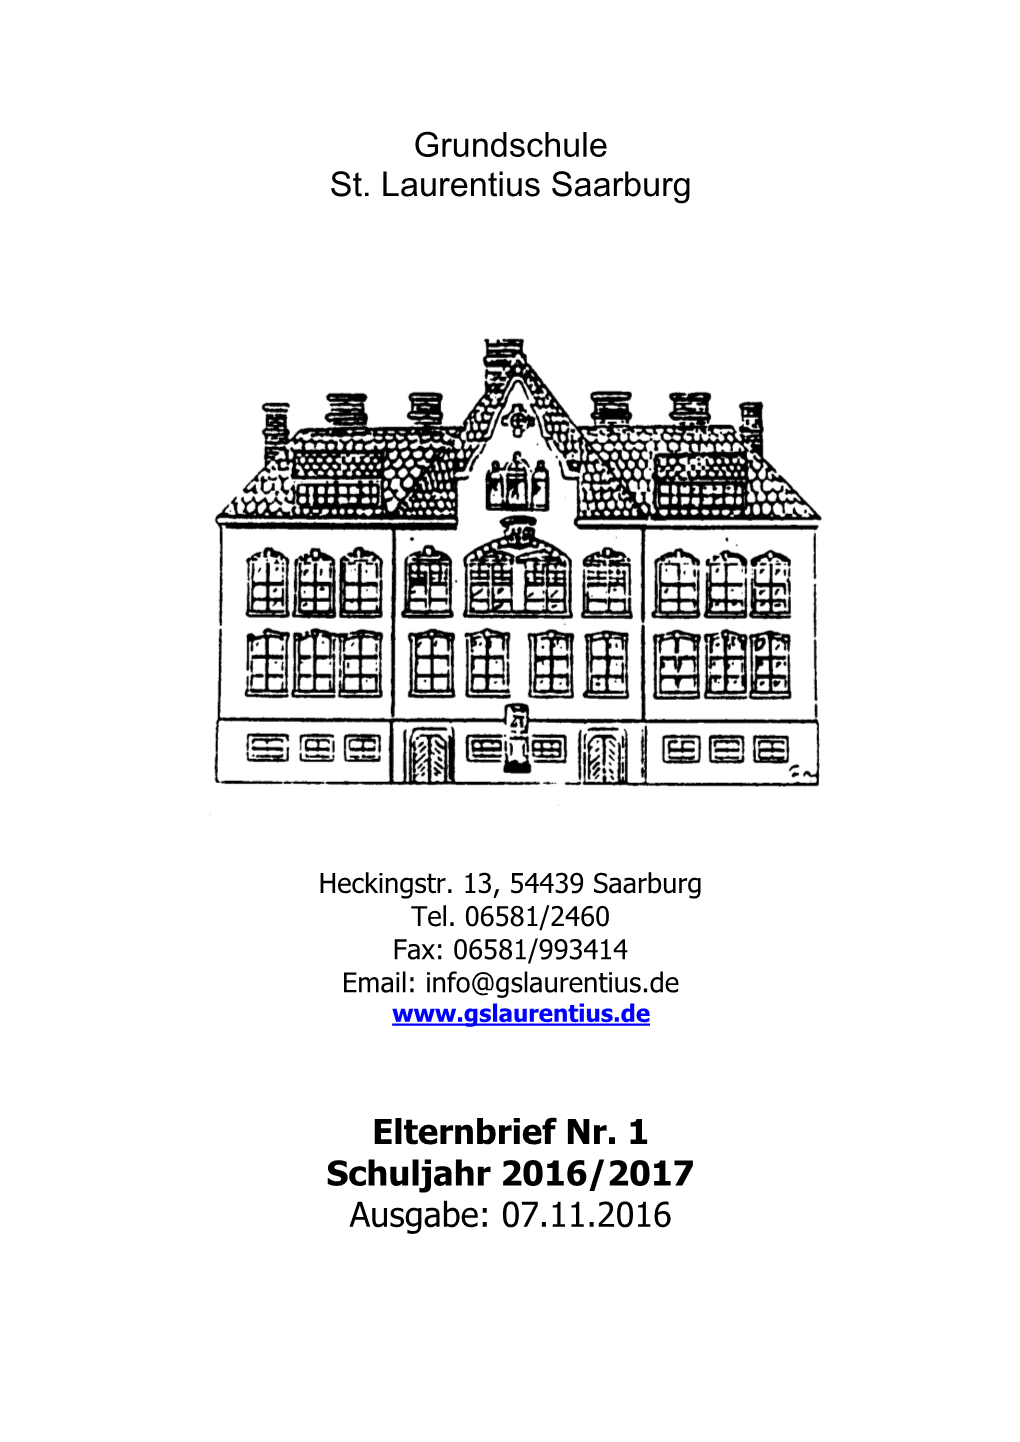 Grundschule St. Laurentius Saarburg Elternbrief Nr. 1 Schuljahr 2016